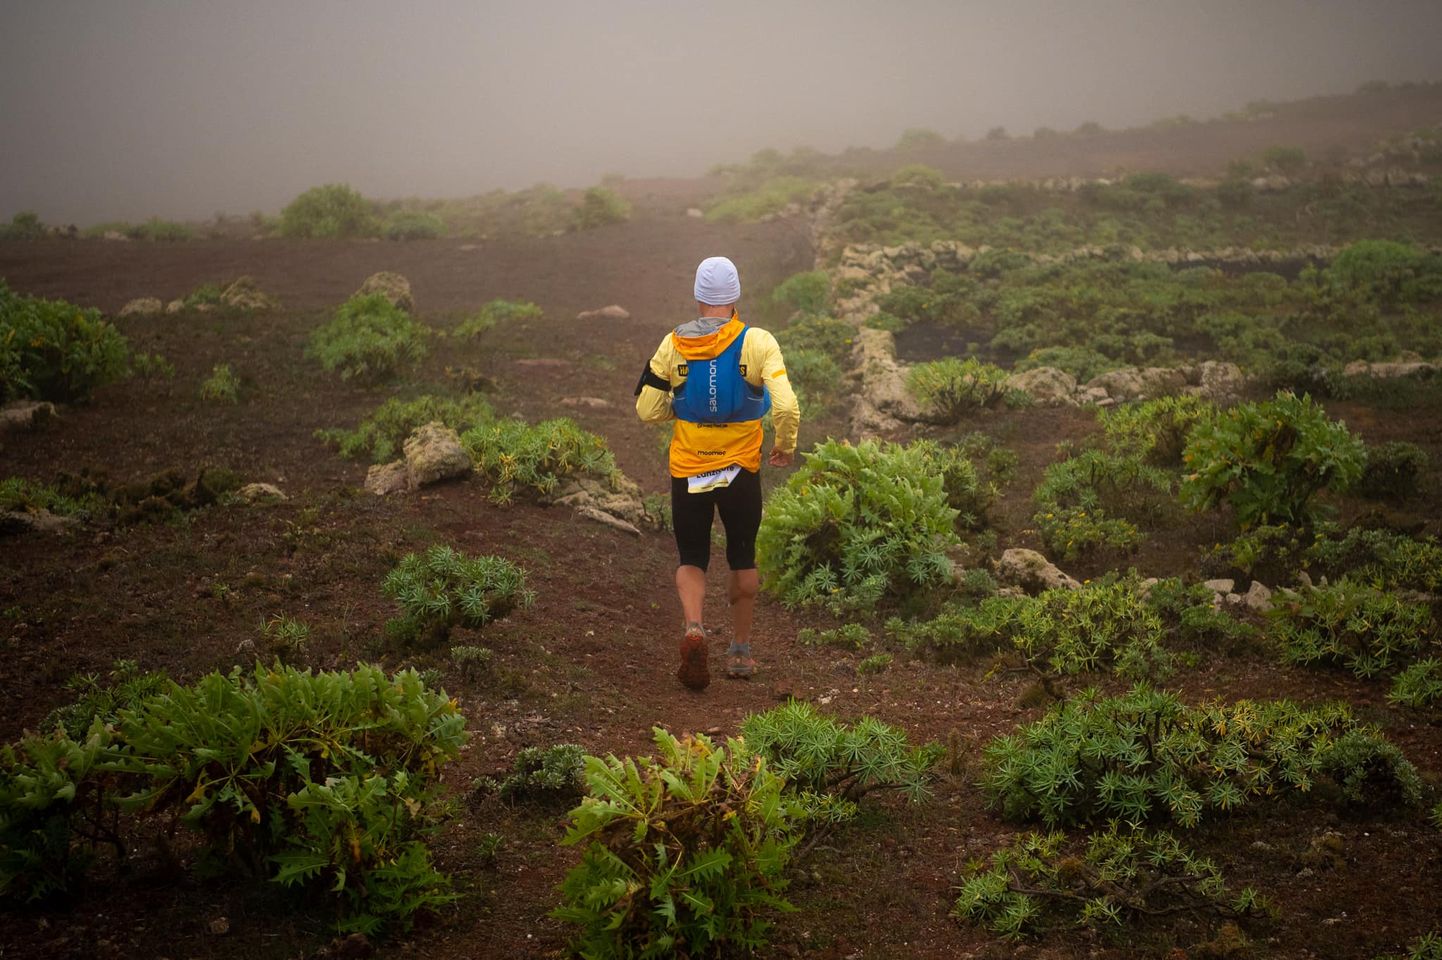 Rait Ratasepa viimane suurim katsumine toimus möödunud aasta novembris, kui ta jooksis 10 ööpäevaga läbi kõik kaheksa Kanaari saart rannikult-rannikule ja ületas iga saare kõrgema tipu.